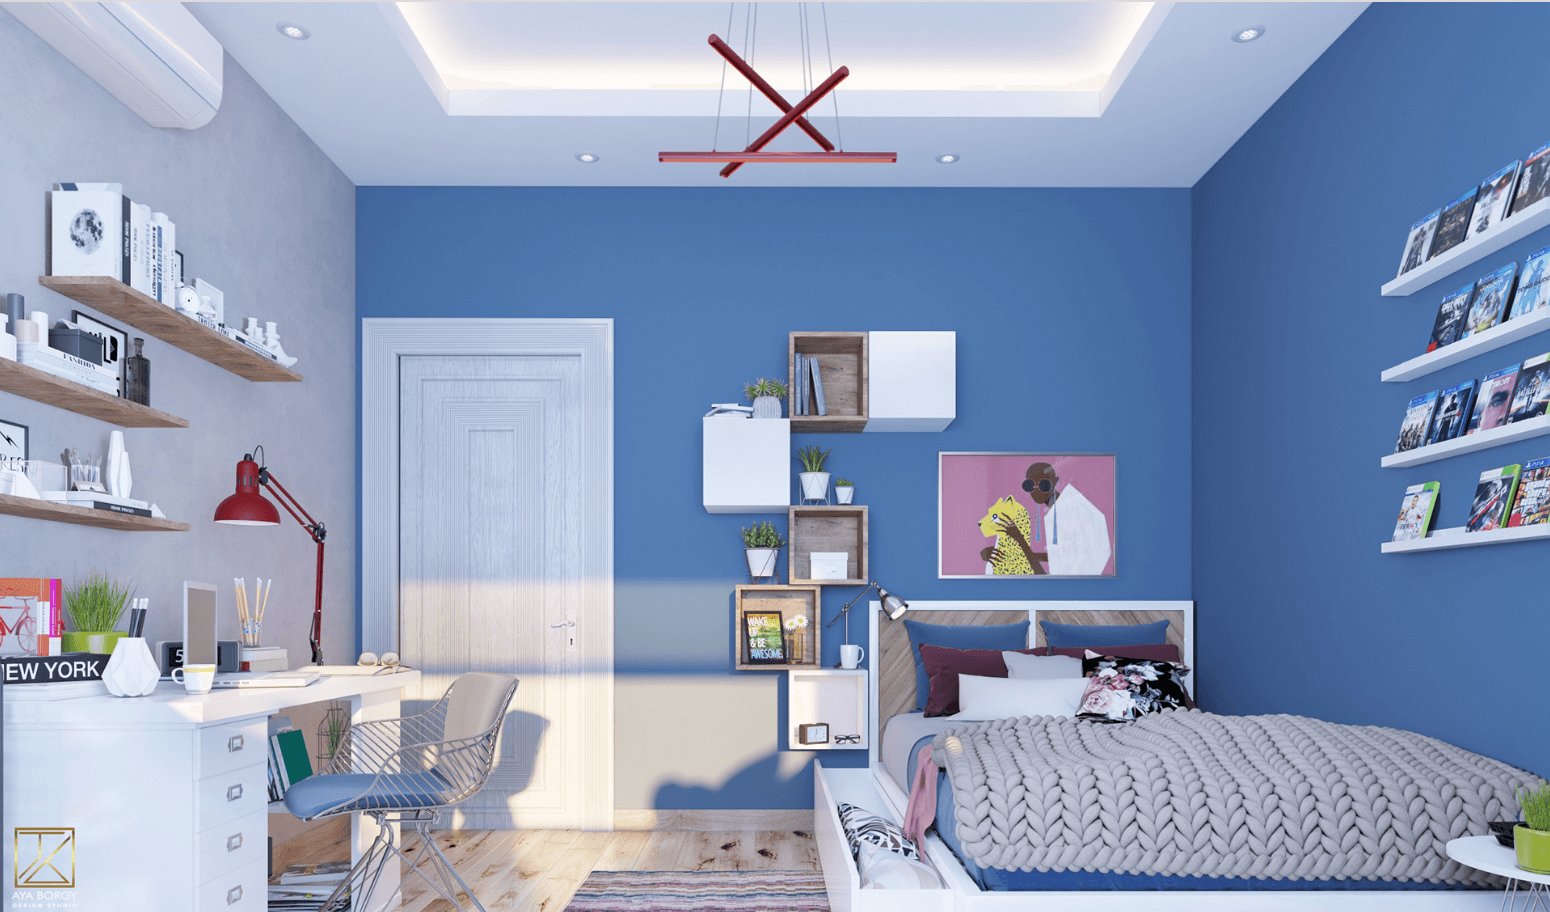 Ý tưởng thiết kế phòng ngủ màu xanh hấp dẫn và một số điều cần biết  Blog   SeSevn